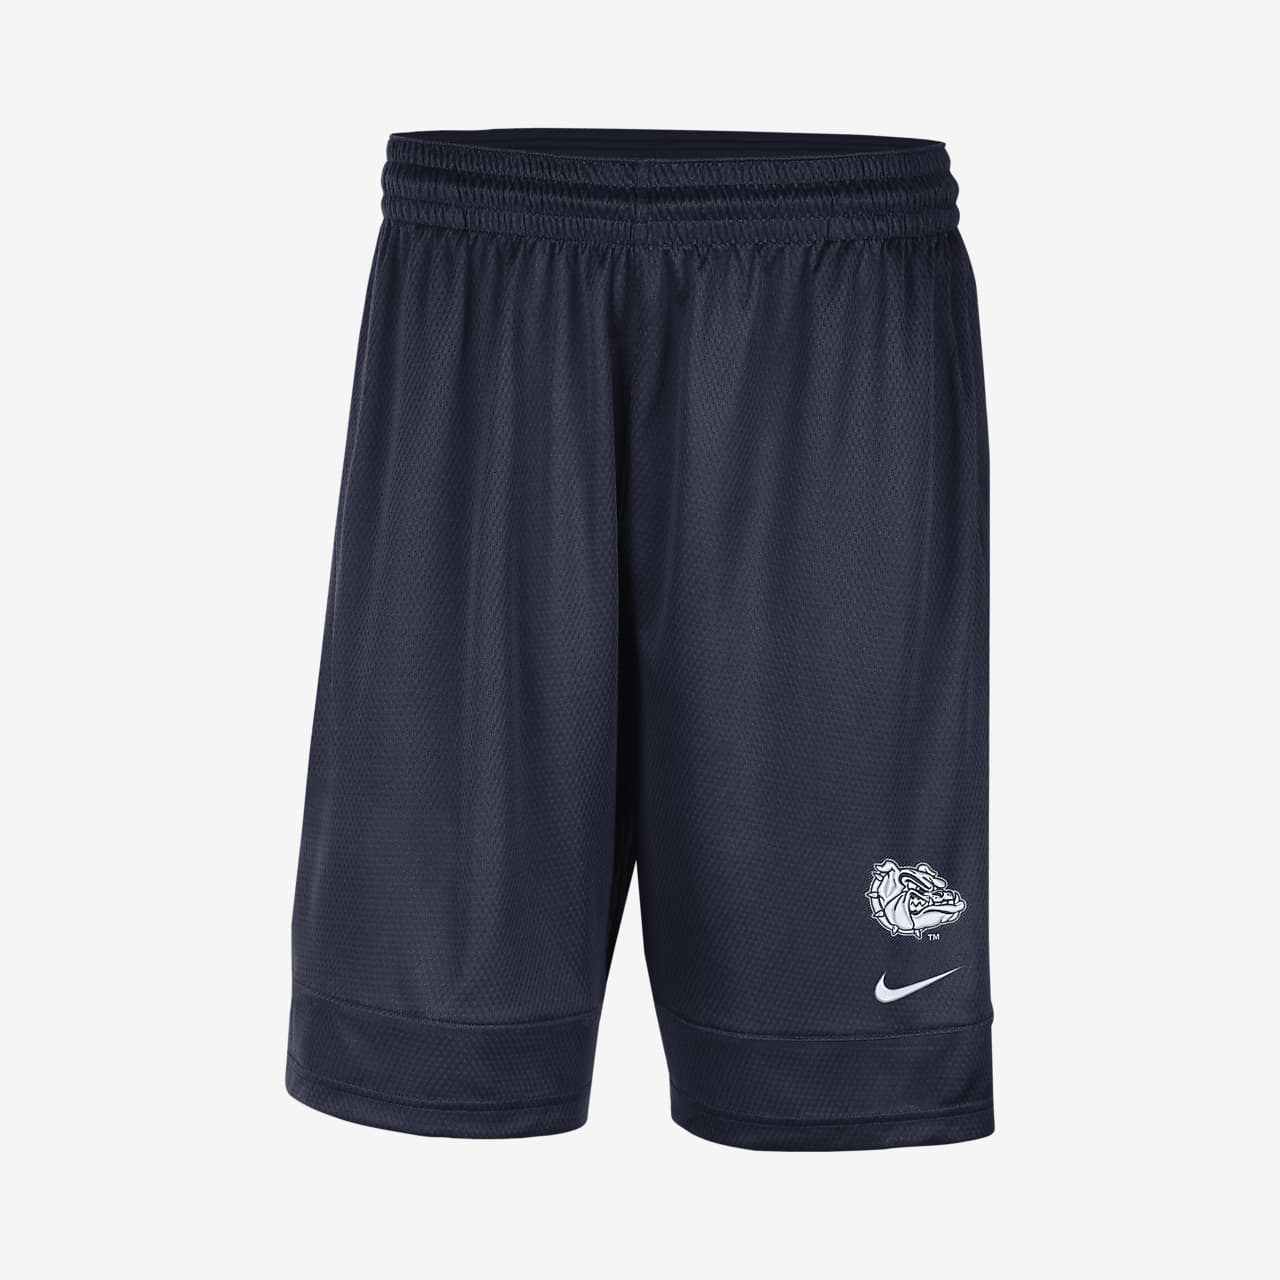 Nike College (Gonzaga) Men's Shorts